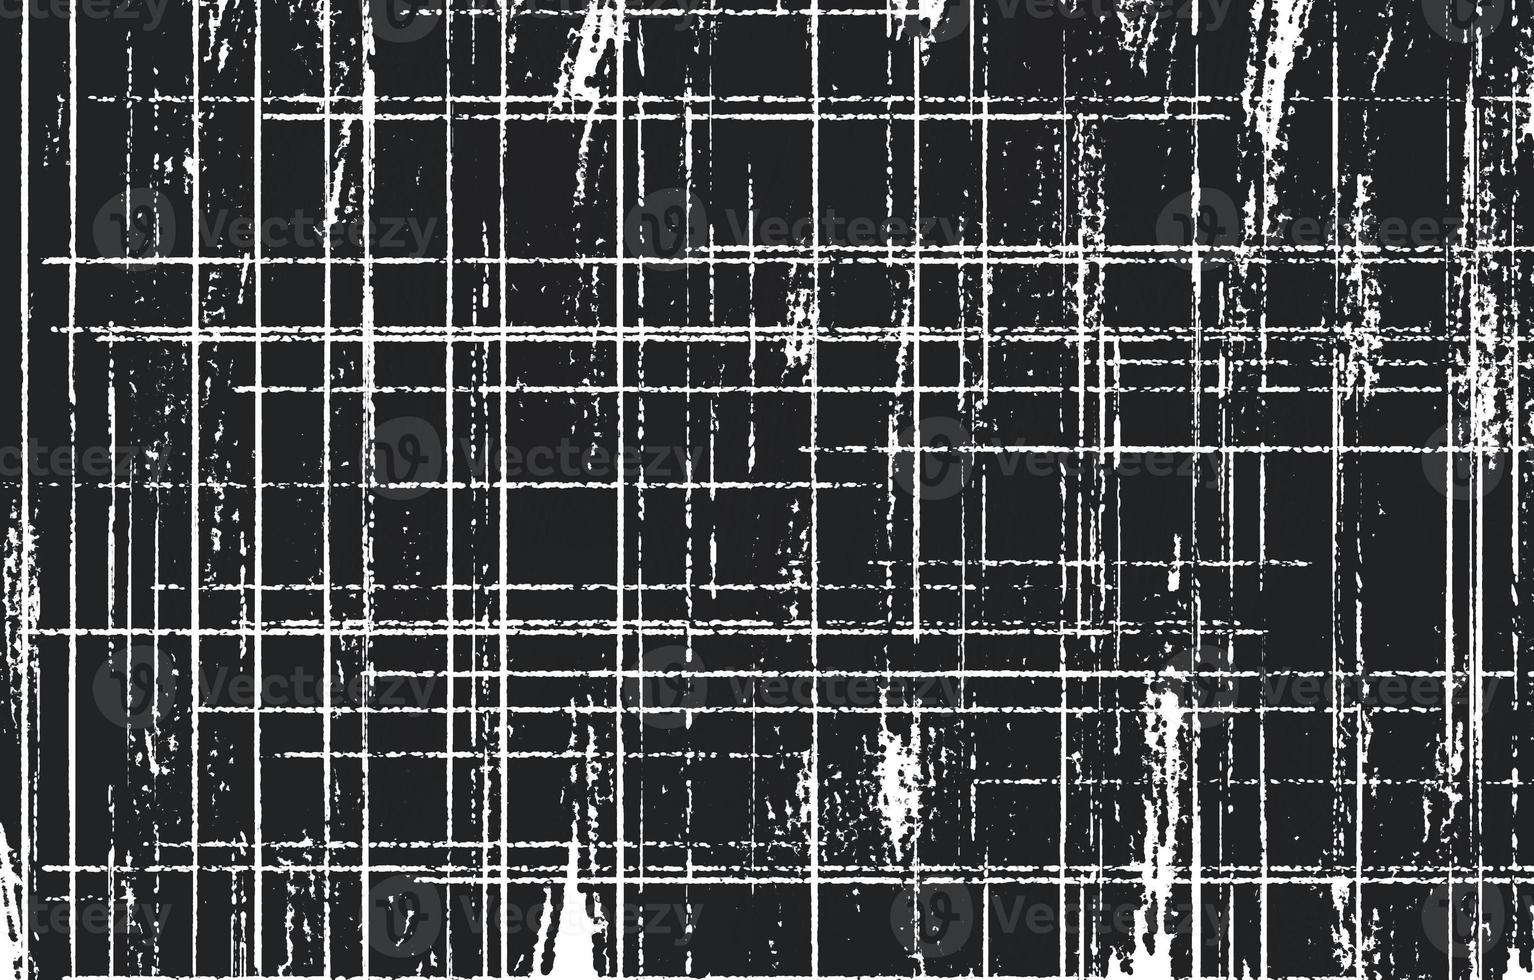 grunge schwarz und weiß urban. dunkler unordentlicher staub überlagert nothintergrund. Einfach zu erstellender abstrakter gepunkteter, zerkratzter Vintage-Effekt mit Rauschen und Körnung foto